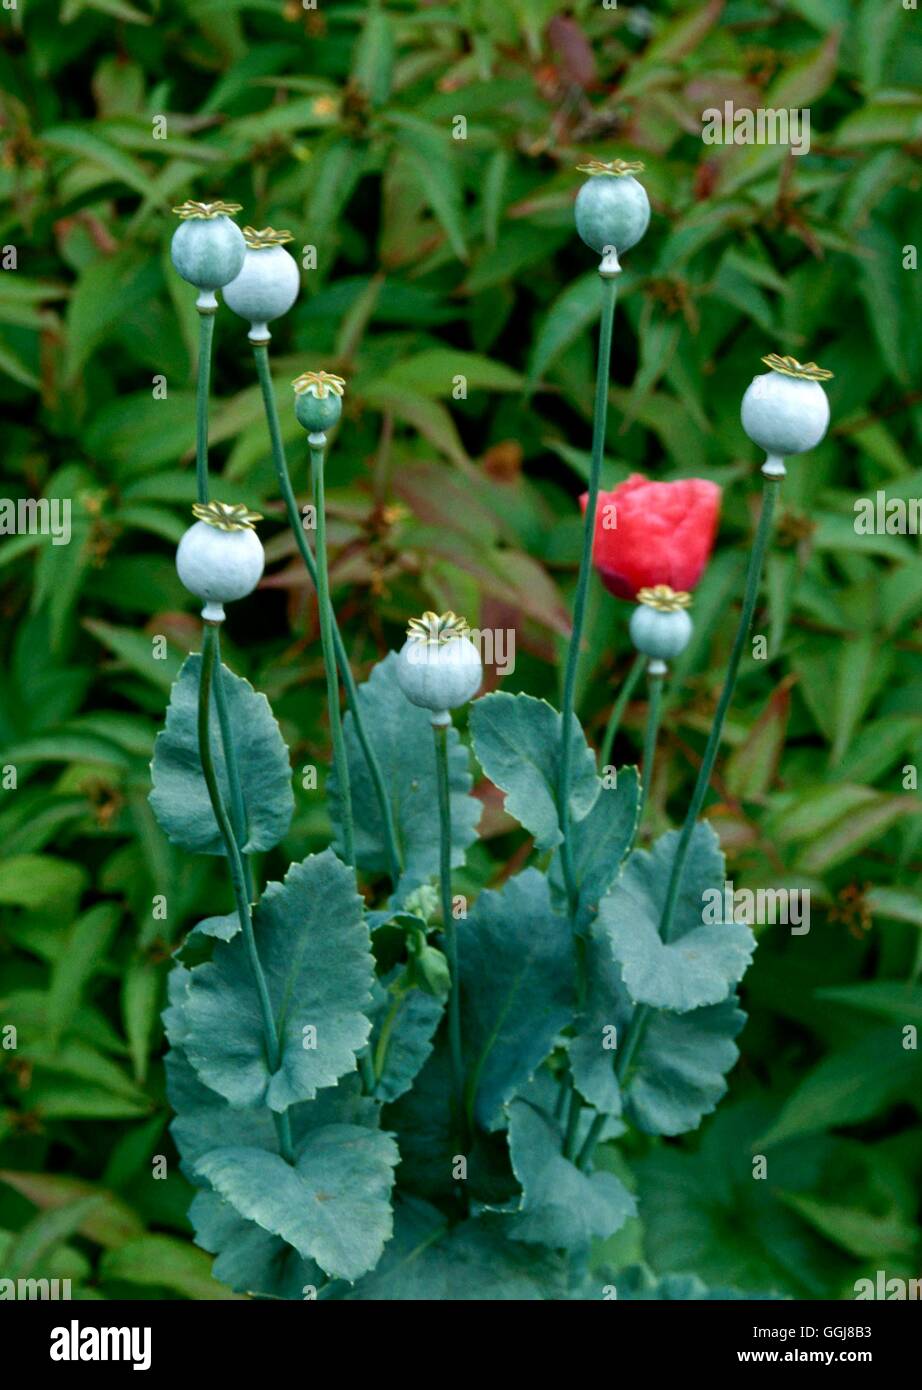 Plantas secas - Amapolas (Papavar) cabezas de semillas adecuadas para el secado DRI036749 Foto de stock